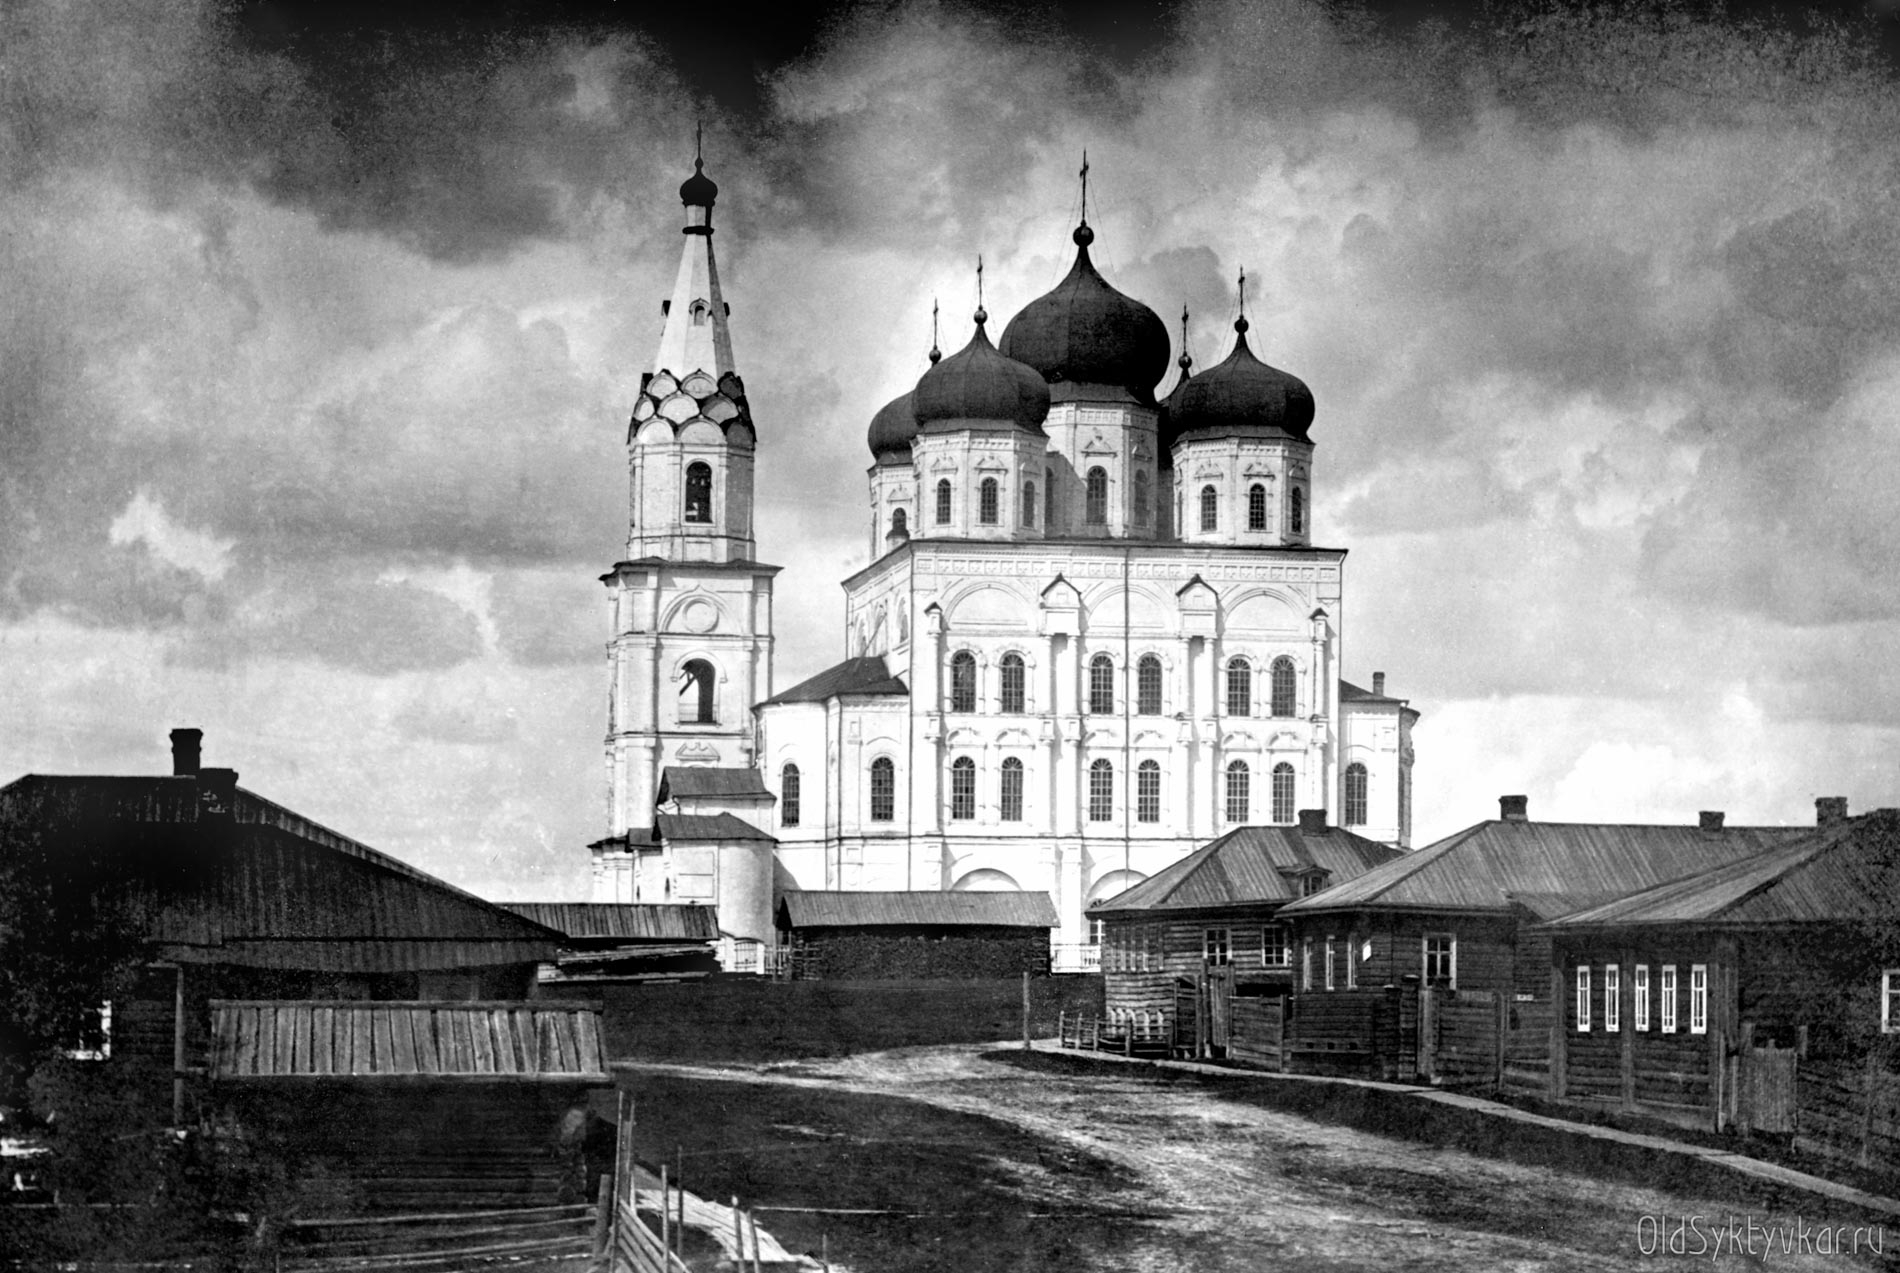 Сыктывкар в деталях: история строительства главного собора столицы Коми